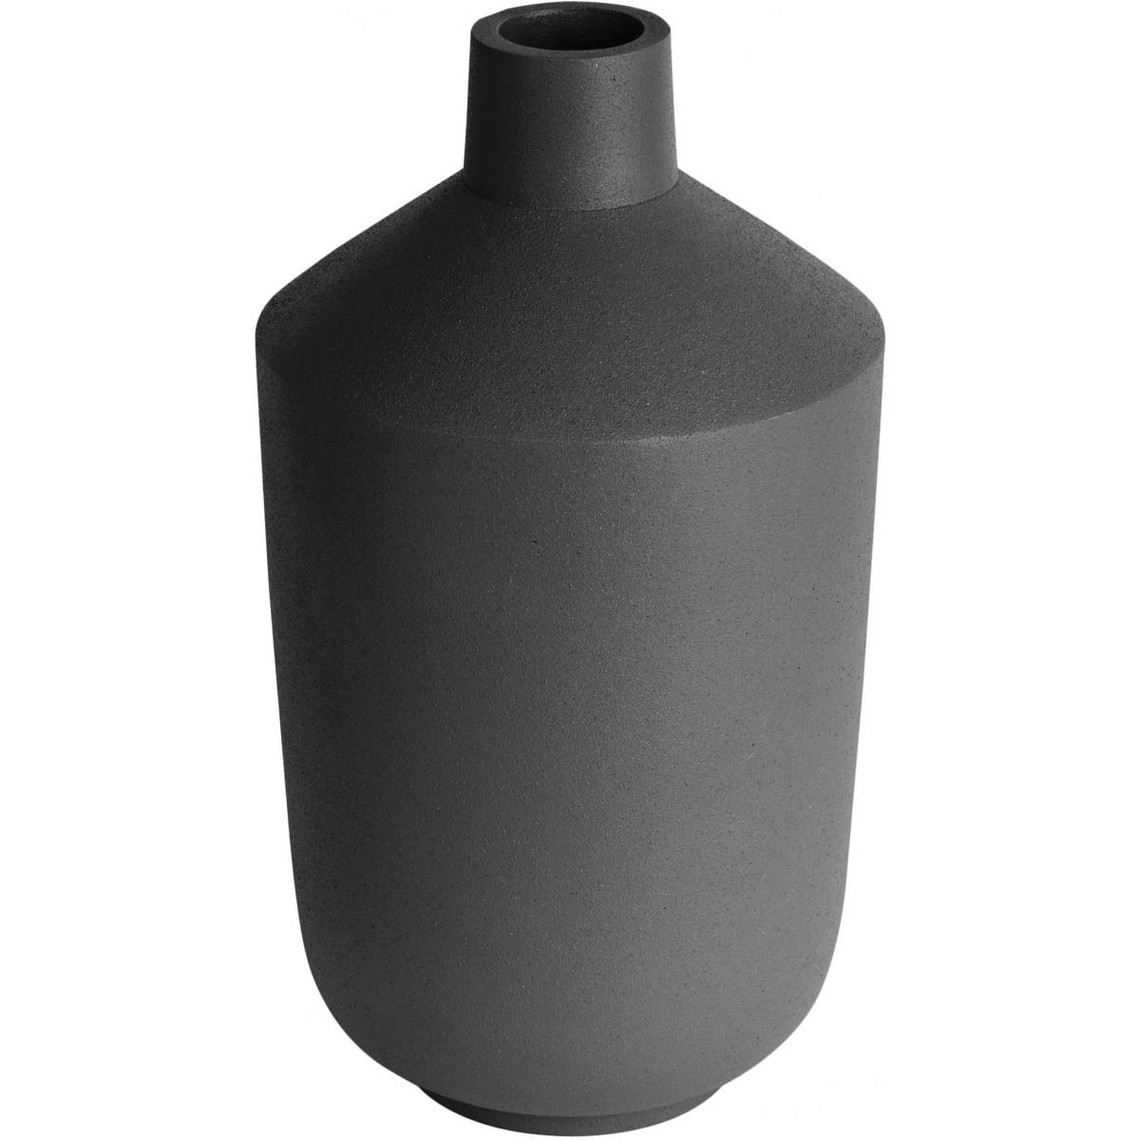 DESCRIPTION: Apportez du style à votre intérieur contemporain chic avec ce   Vase Bouteille Noir SAQU  d'un coloris gris foncé très élégant. Caractéristiques : 